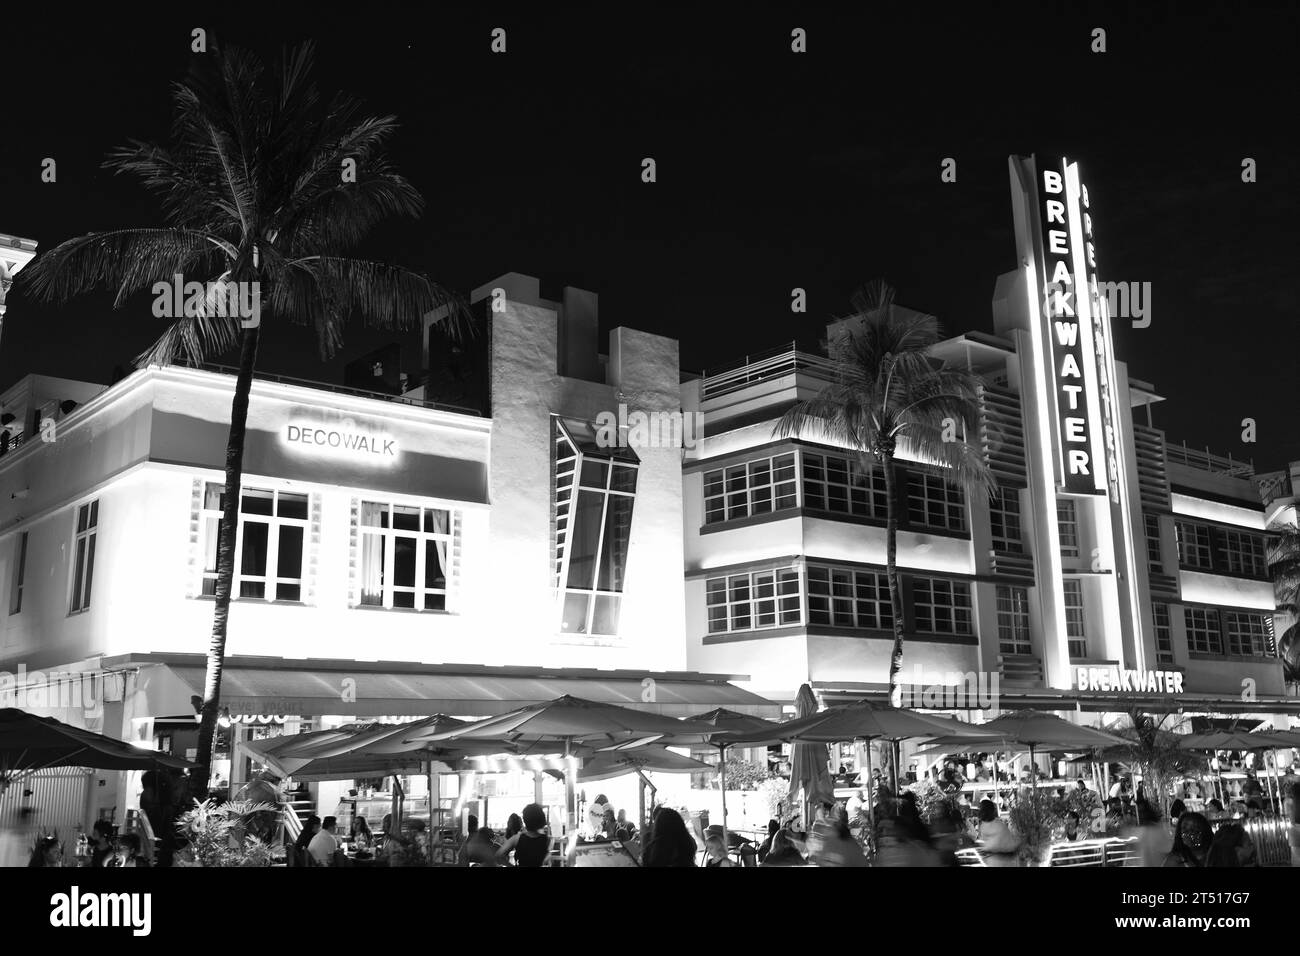 Miami, Floride États-Unis - 16 avril 2021: Miami South Beach Ocean Drive Architecture illuminée dans la nuit ville de miami avec restaurant. brise-lames. Banque D'Images